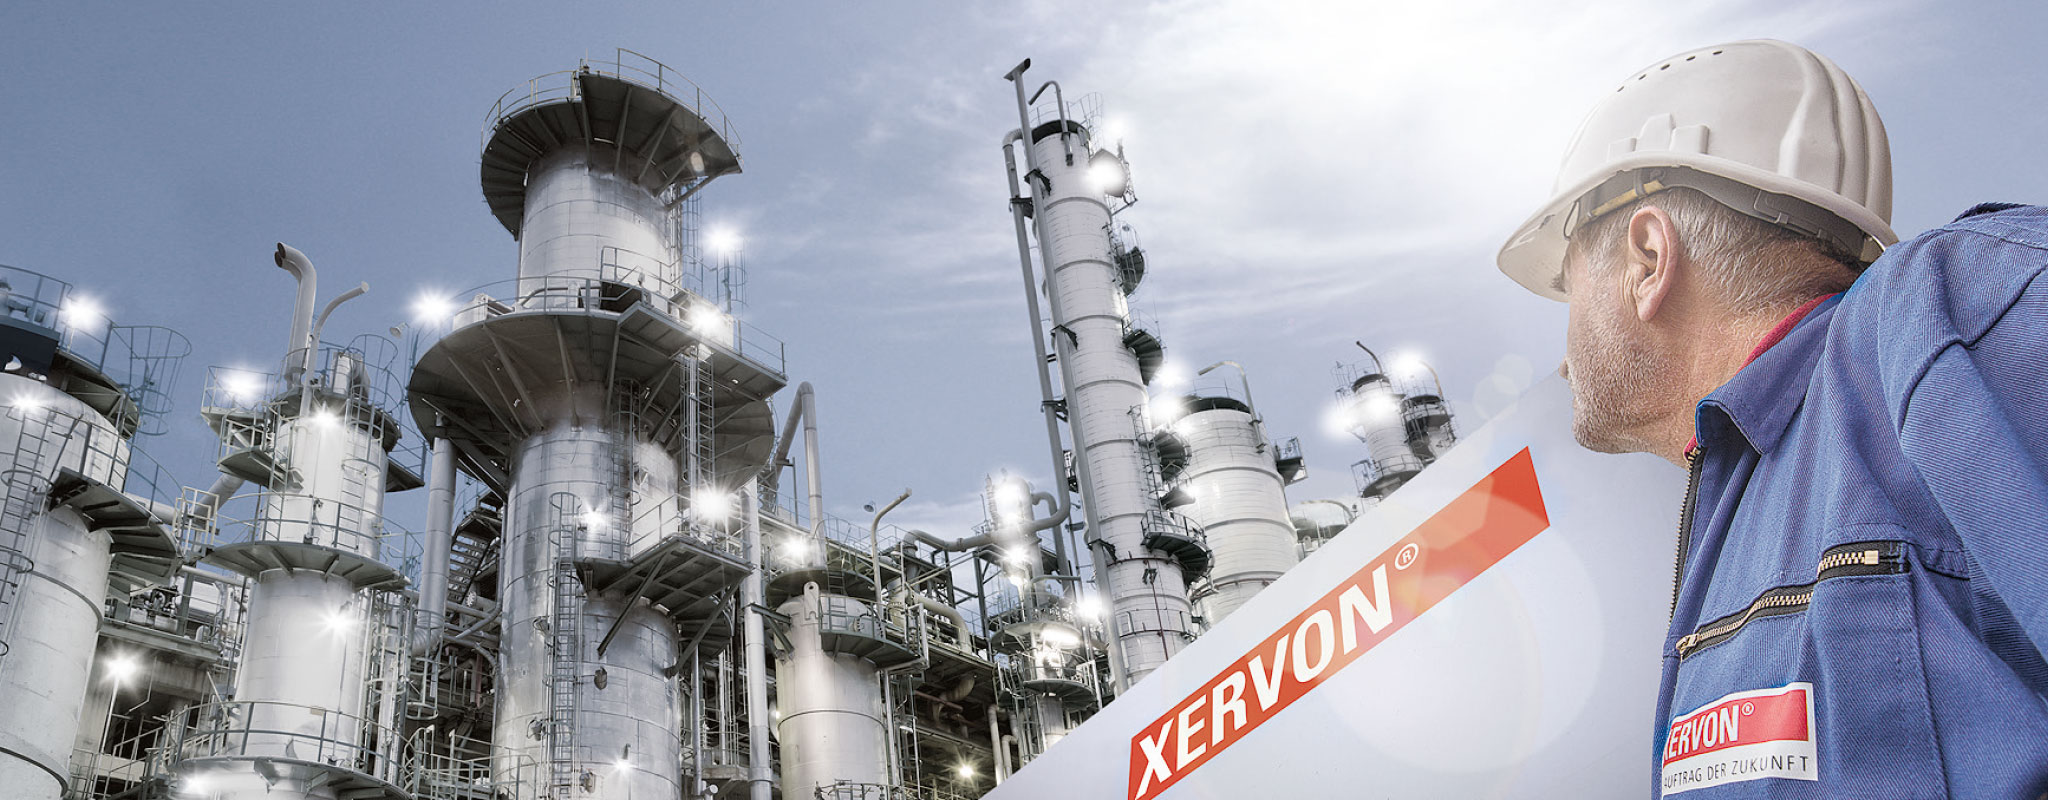 Společnost XERVON je odborníkem na technické průmyslové služby a tím pravým partnerem při vytváření, ochraně a optimalizaci hodnot.